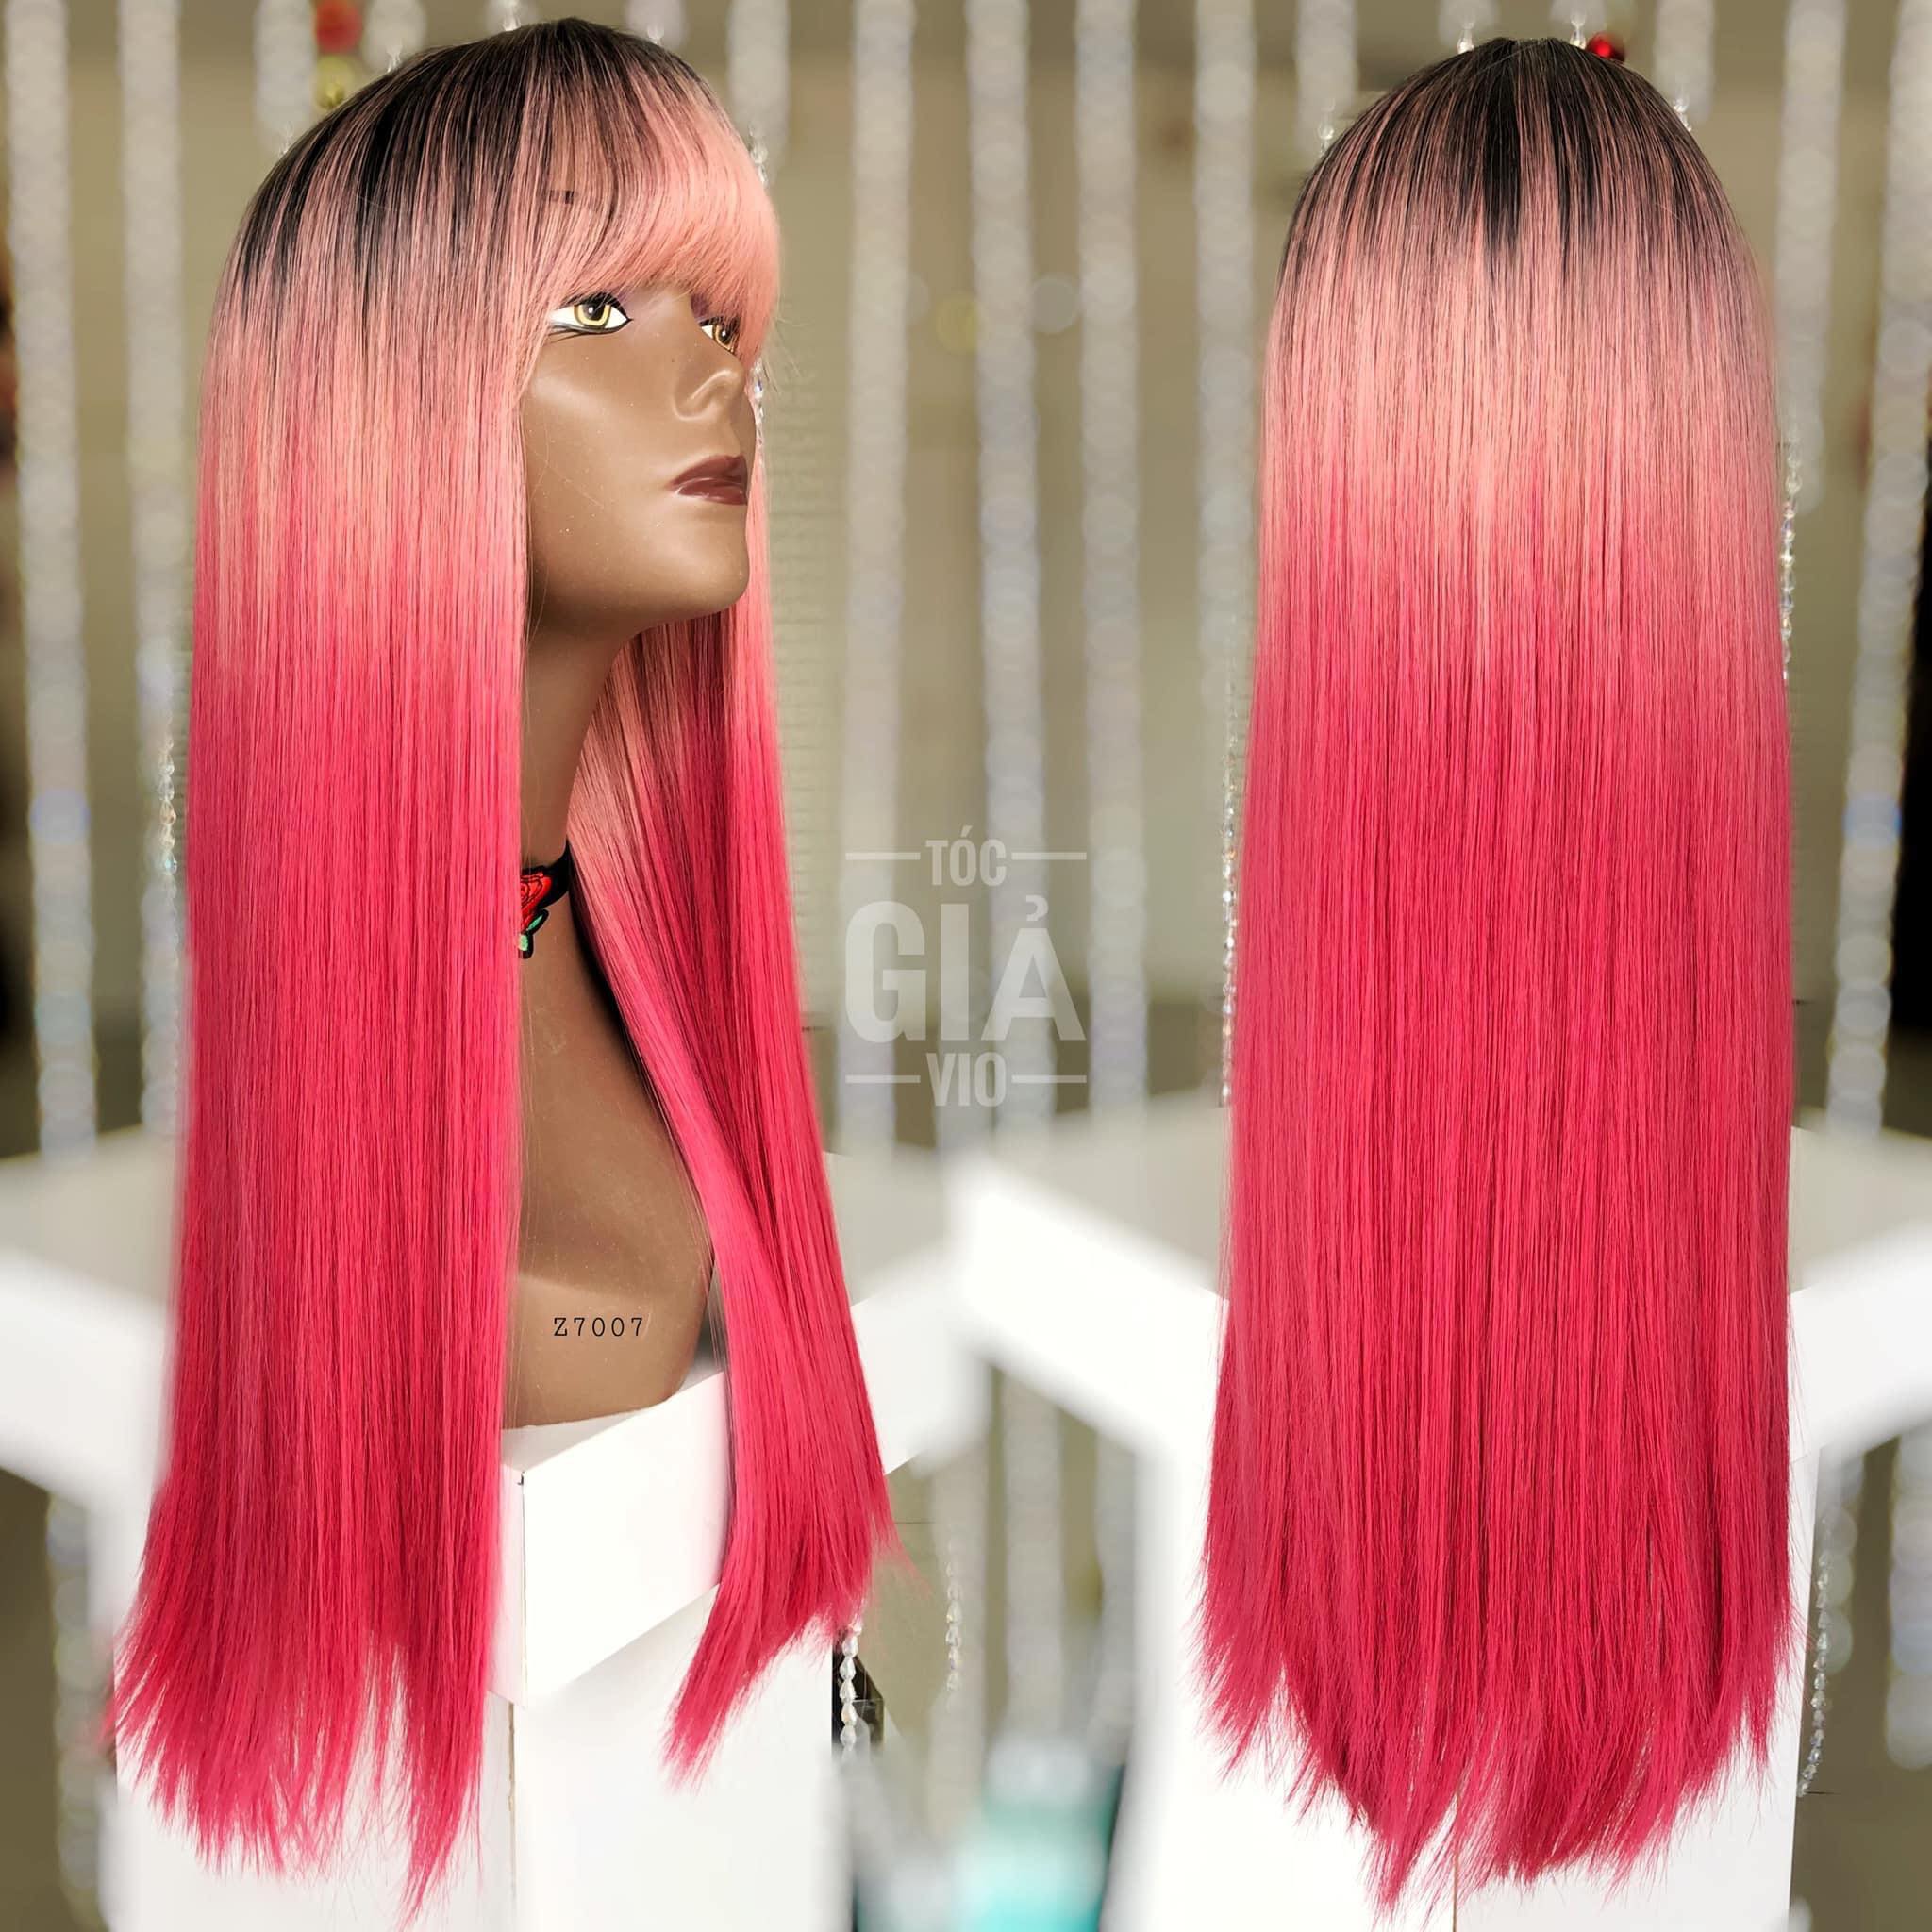 Tóc giả hồng: Không muốn đổi màu tóc của mình nhưng vẫn muốn thử trải nghiệm với màu tóc hồng? Xem các hình ảnh về tóc giả hồng và khám phá sự thú vị của màu sắc độc đáo này!